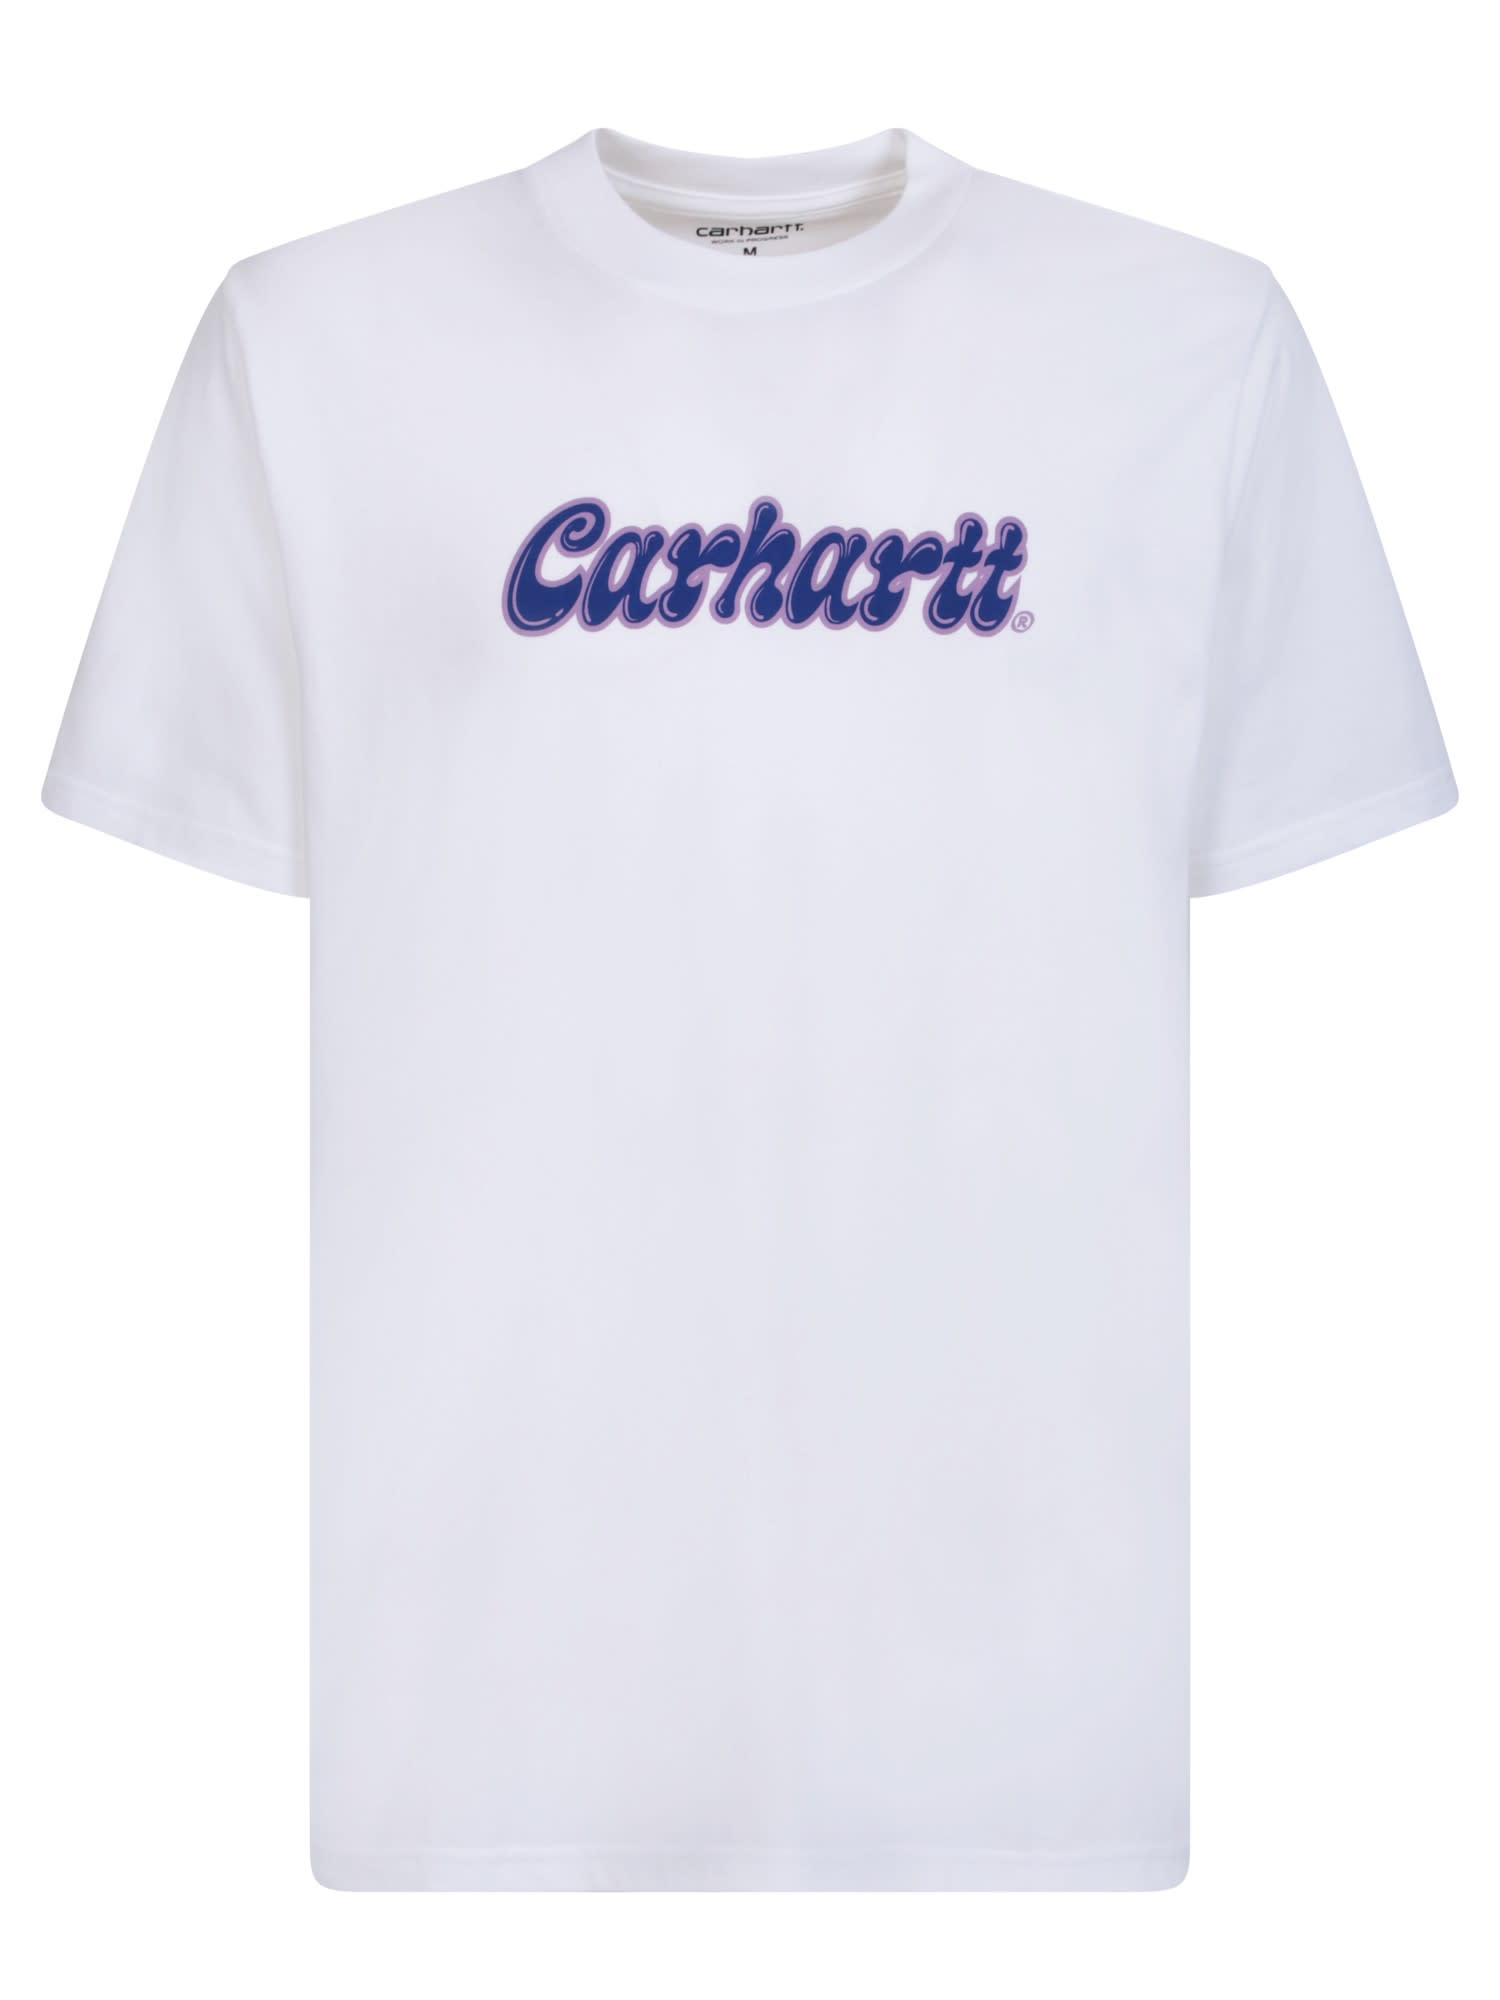 CARHARTT LIQUID SCRIPT WHITE T-SHIRT